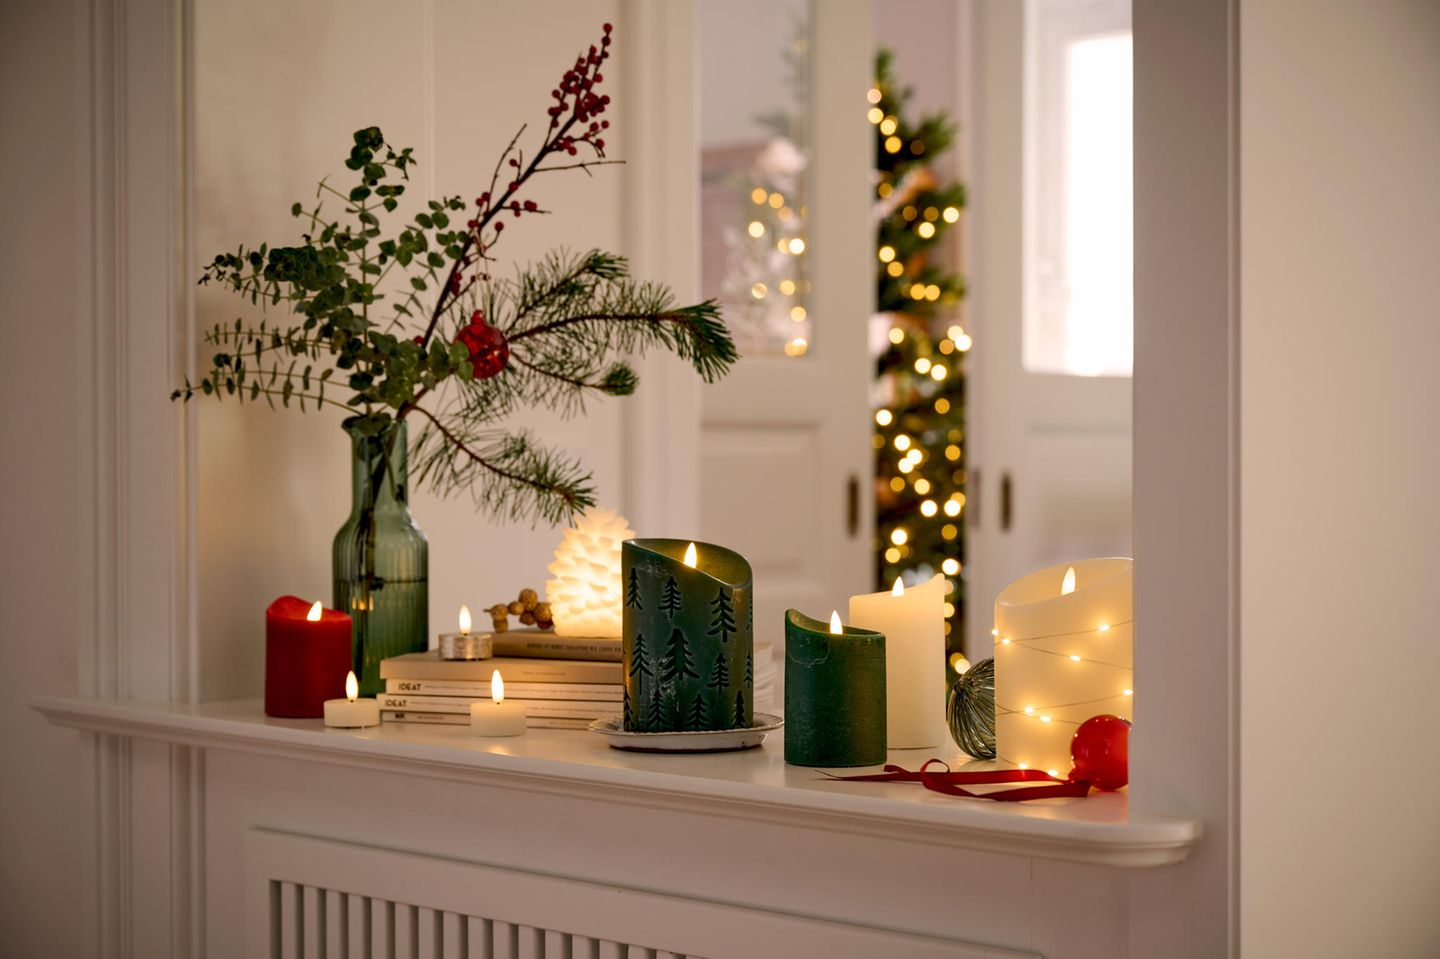 Fensterbank Deko – Stilvolle Deko Ideen für die Fensterbank  Christmas  window decorations, Scandinavian christmas decorations, Modern holiday decor